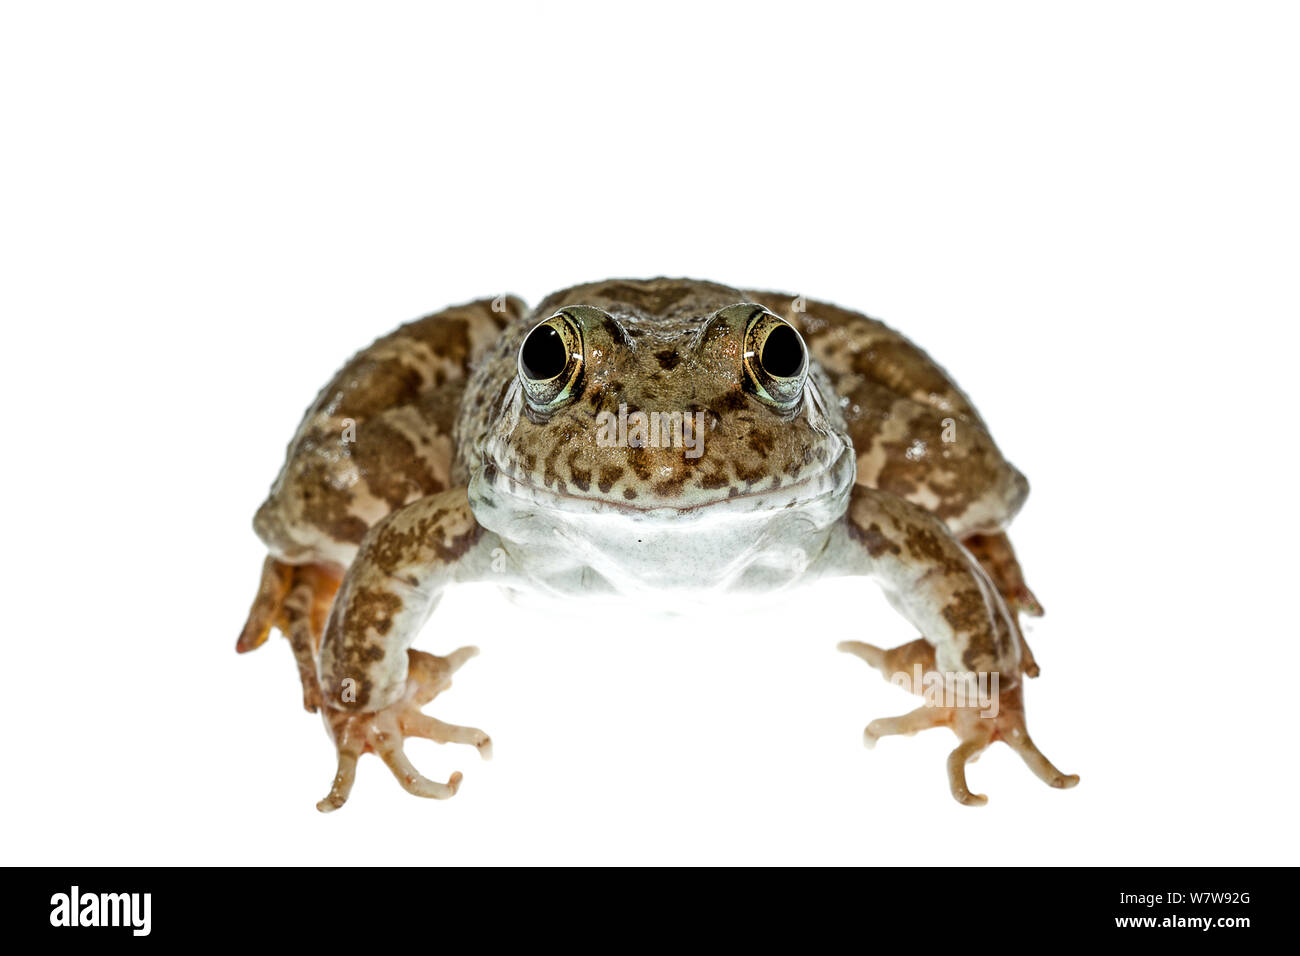 Vorderansicht des Levant wasser Frosch (Pelophylax bedriagae) Epta Piges, Rhodos, Griechenland, 29. Meetyourneighbors.net Projekt. Stockfoto